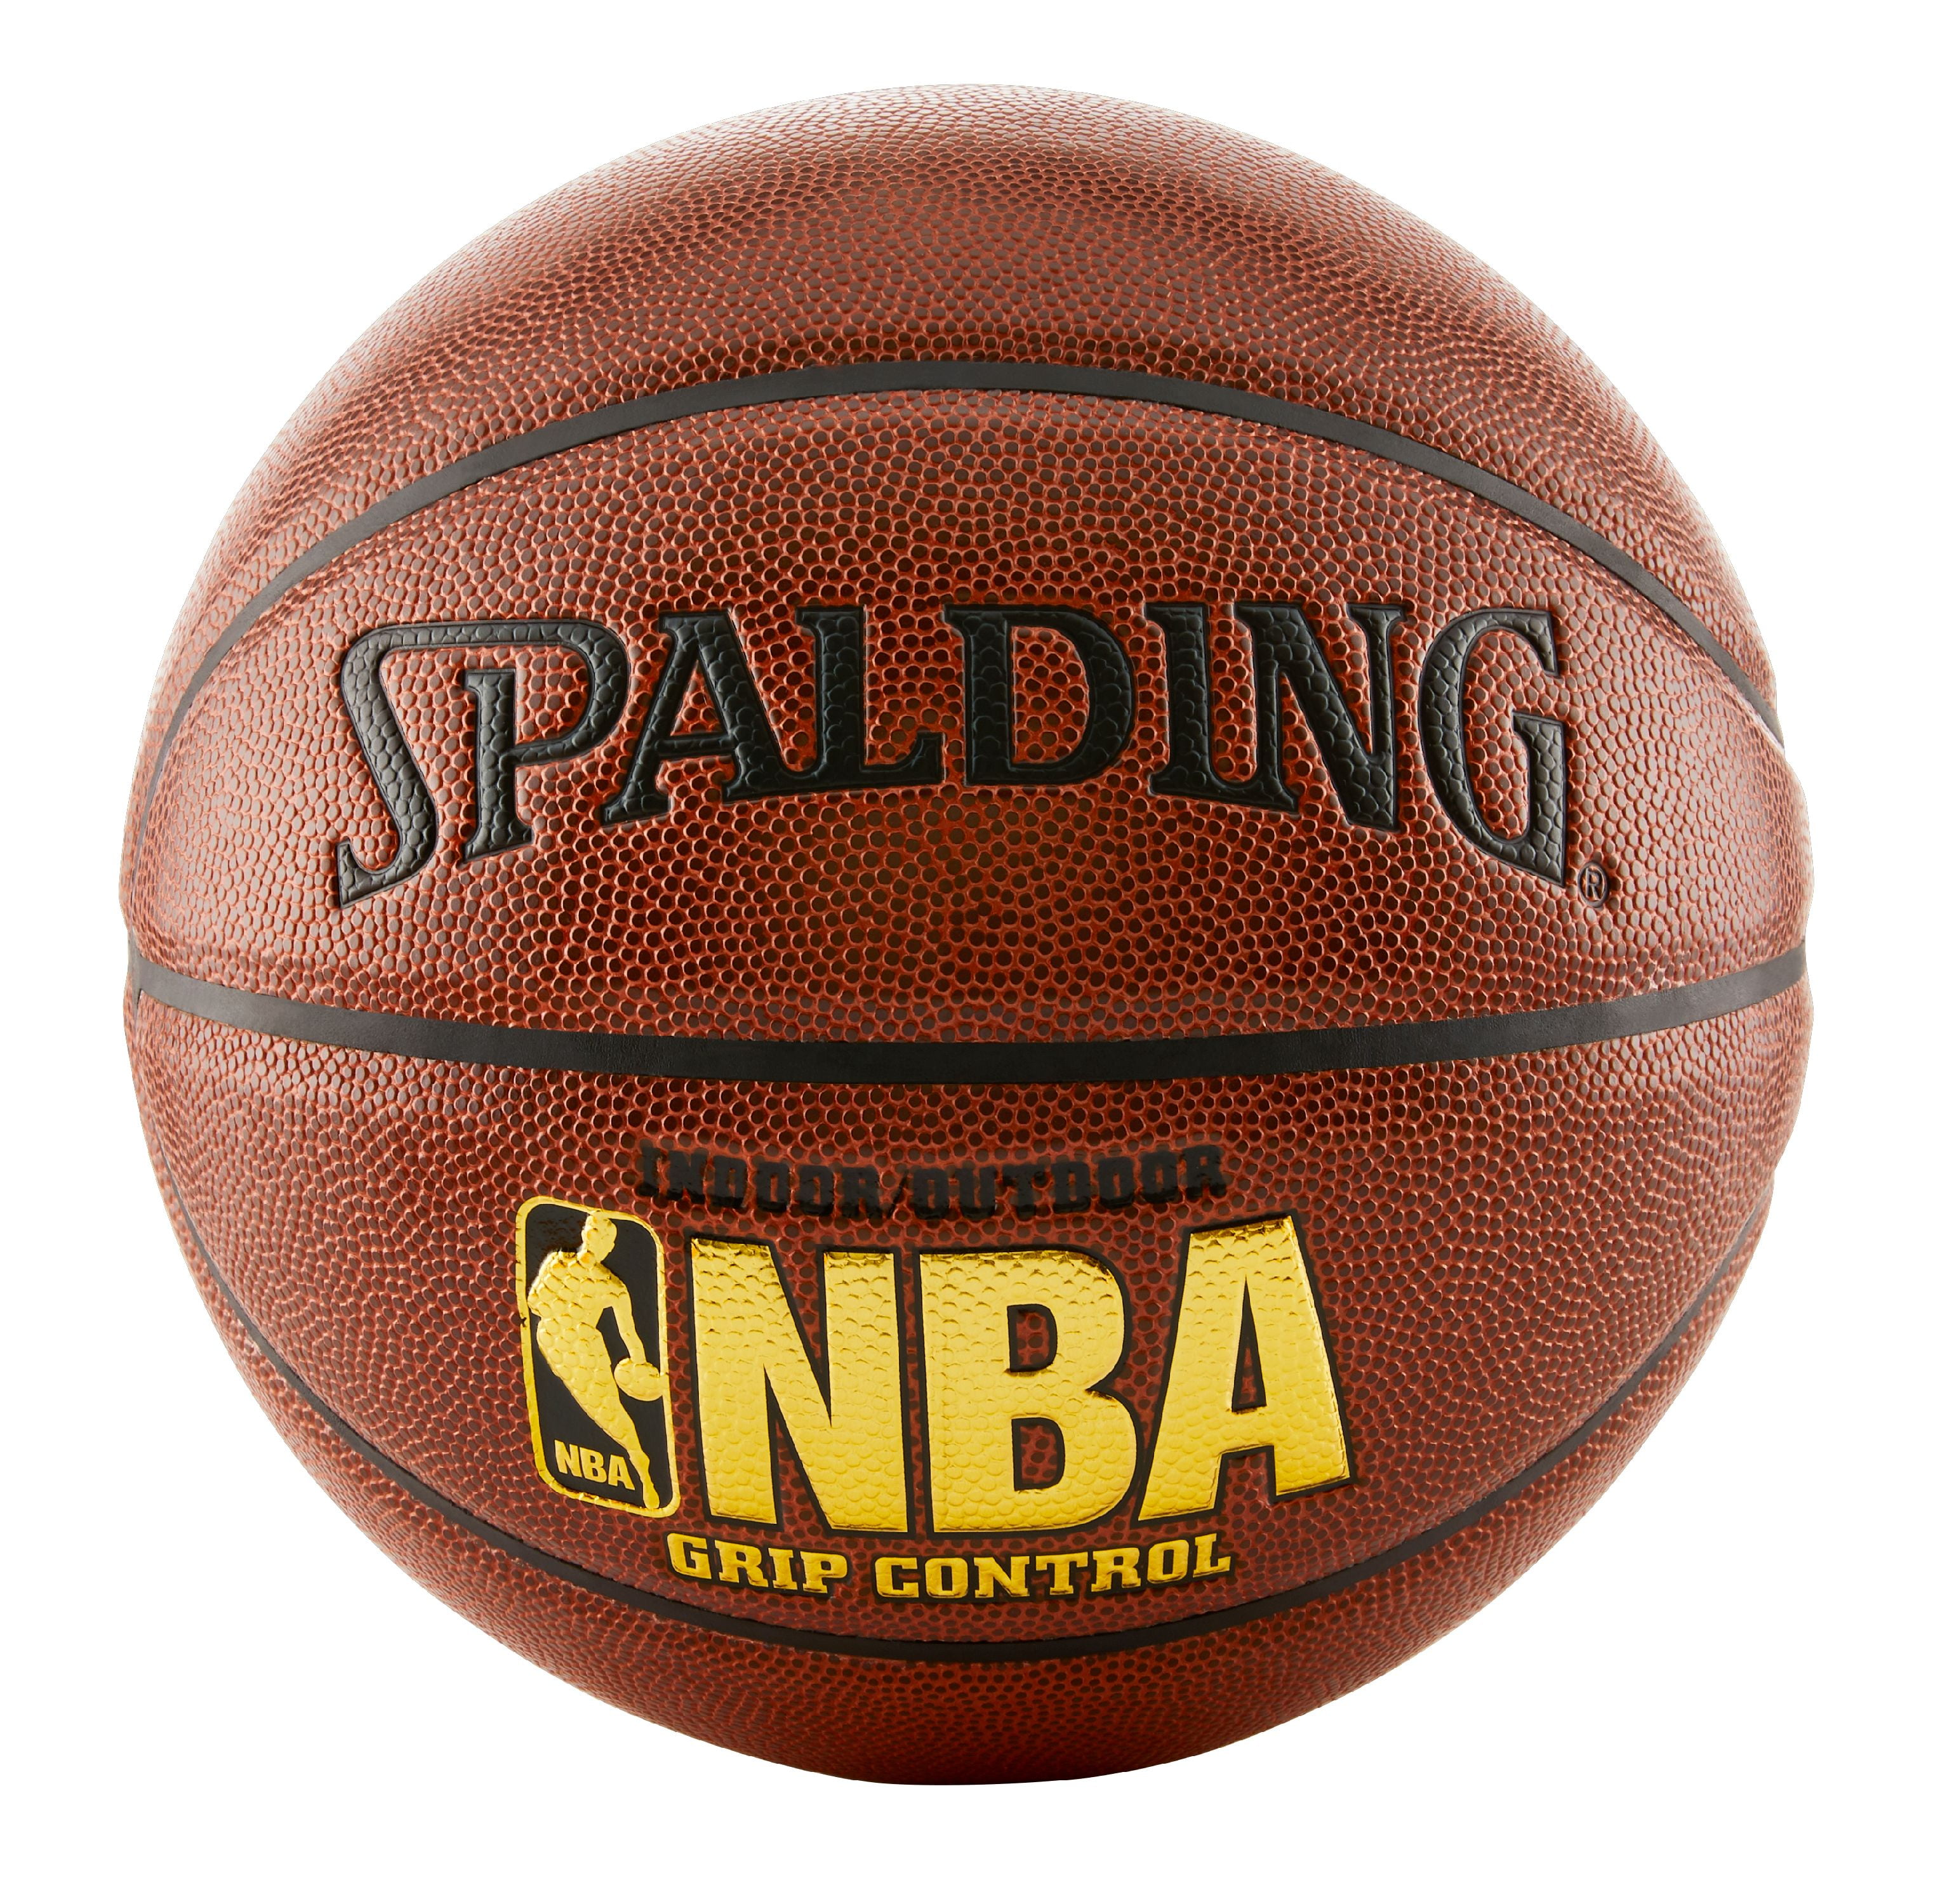 Evolution Game Basketball - Wilson Sporting Goods